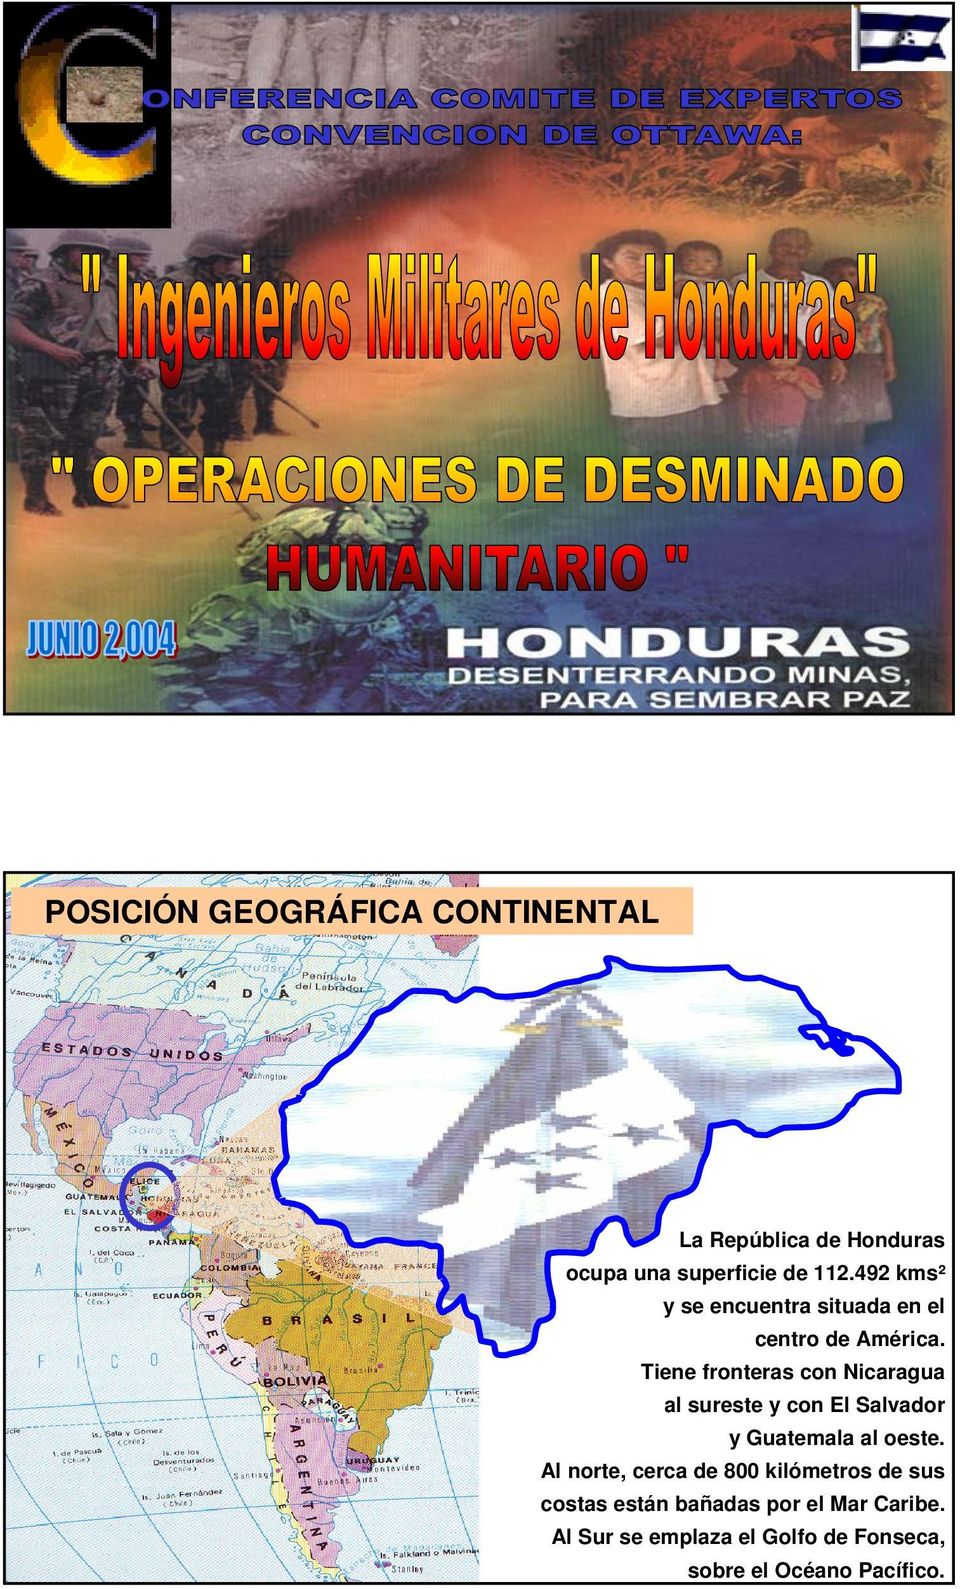 Tiene fronteras con Nicaragua al sureste y con El Salvador y Guatemala al oeste.